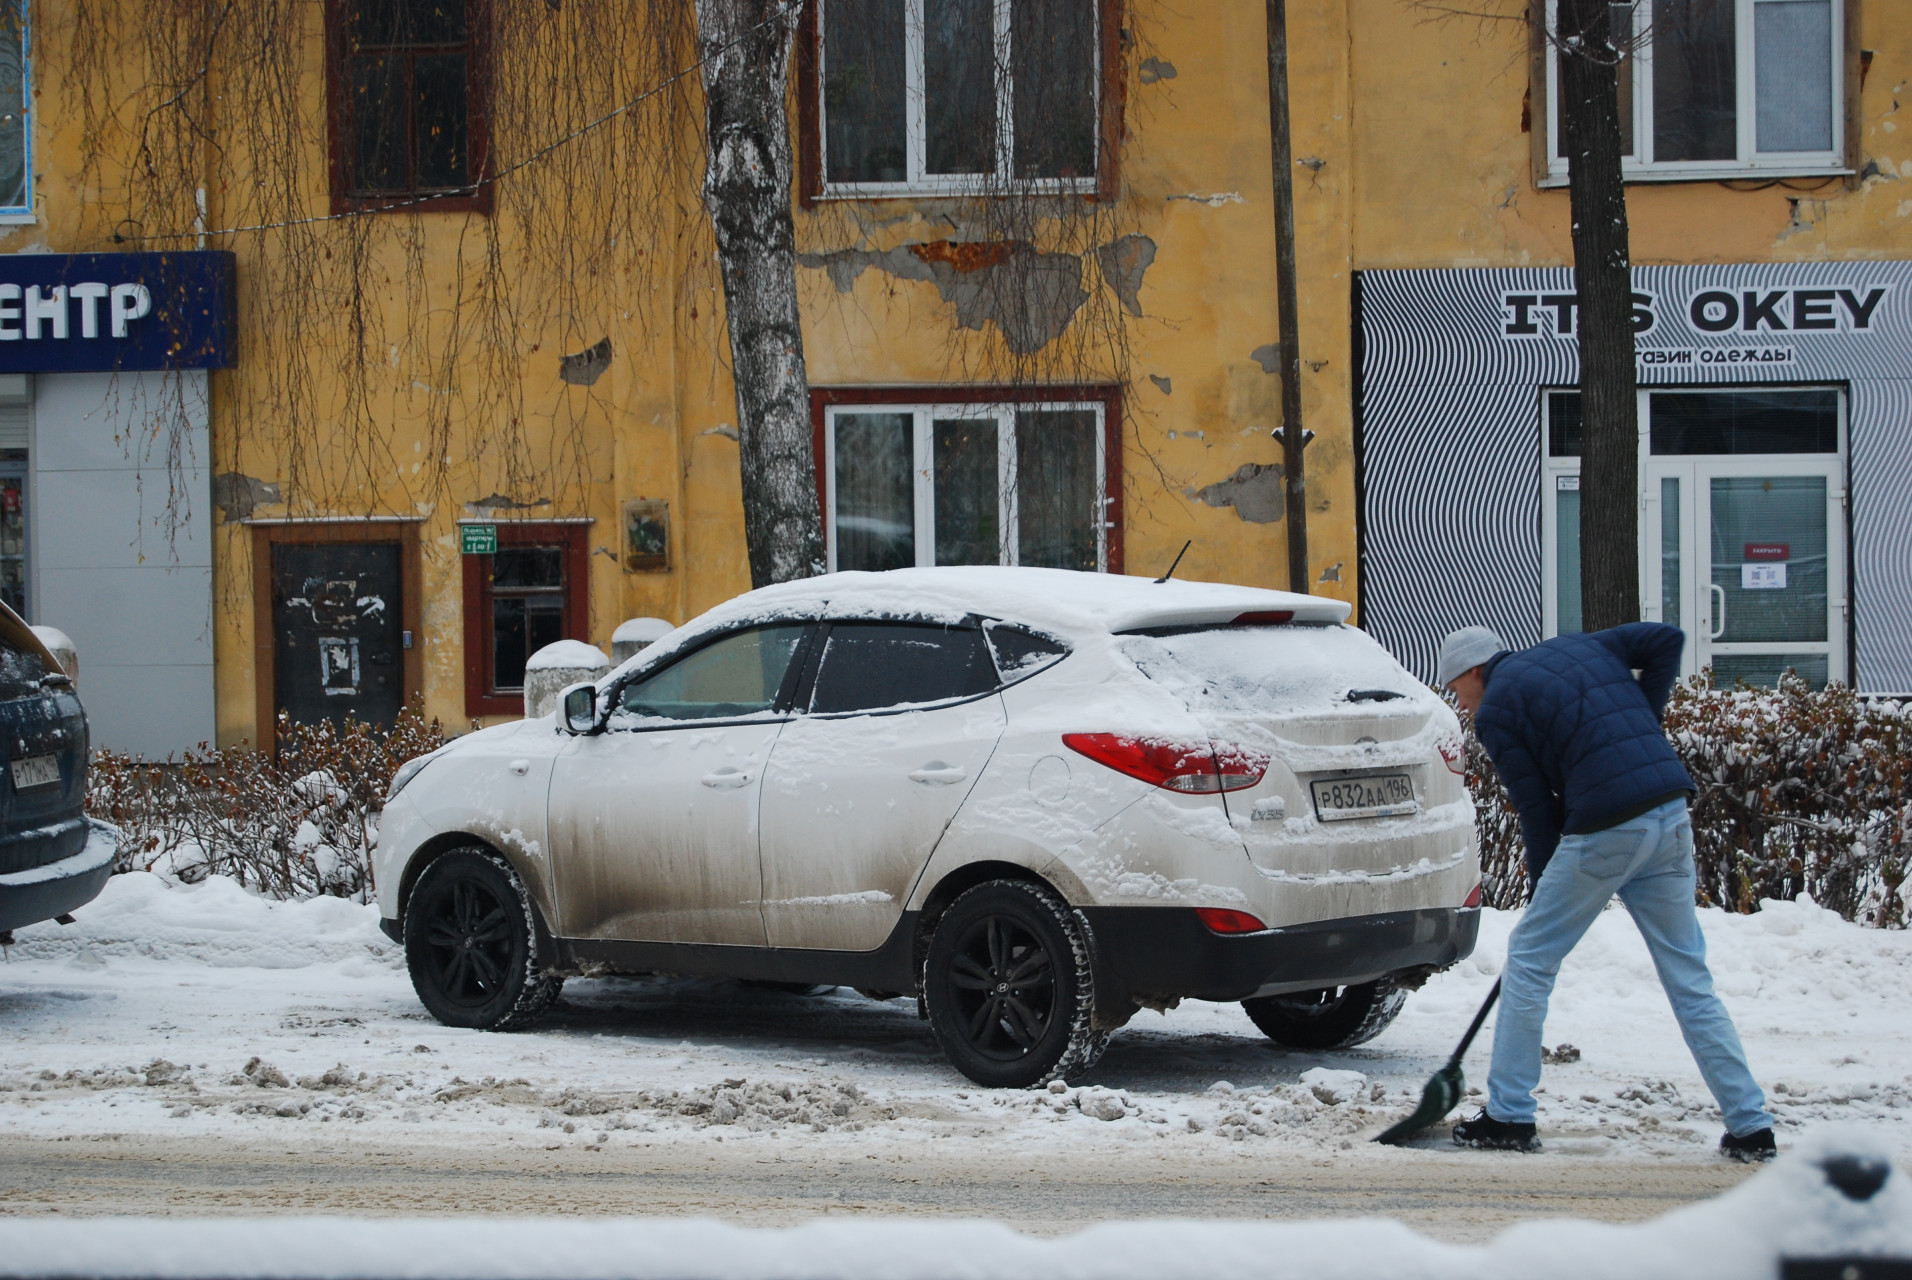 Машины после снегопада - в снежной ловушке. Автомобилисты достают лопаты, метелки, скребки. И вот уже на месте стоянки вырастают грязные сугробики.